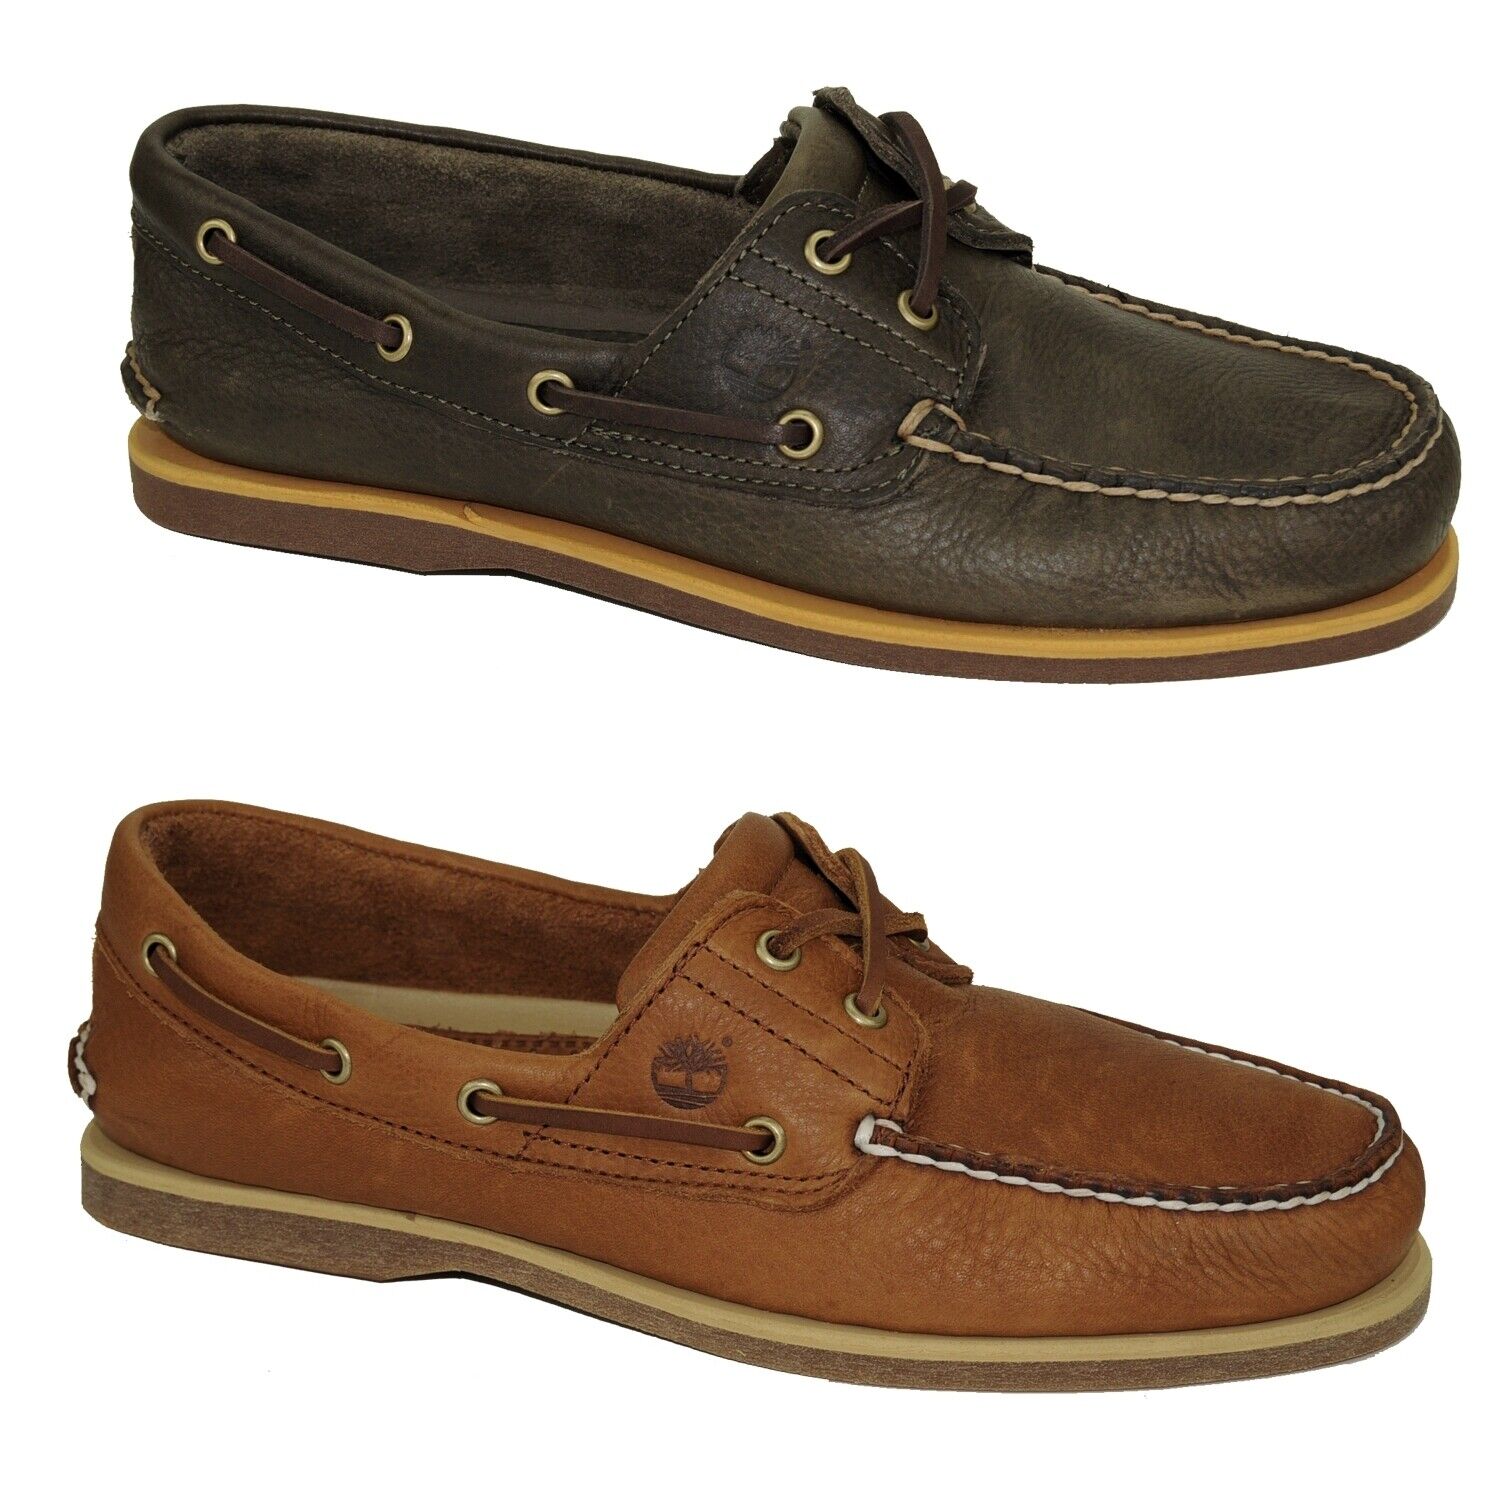 Timberland Classic Boat Shoes 2-Eye Deckschuhe Segelschuhe Herren Schuhe Modell- Farbe A2AFC - Olive Schuhgröße EUR 43 US 9